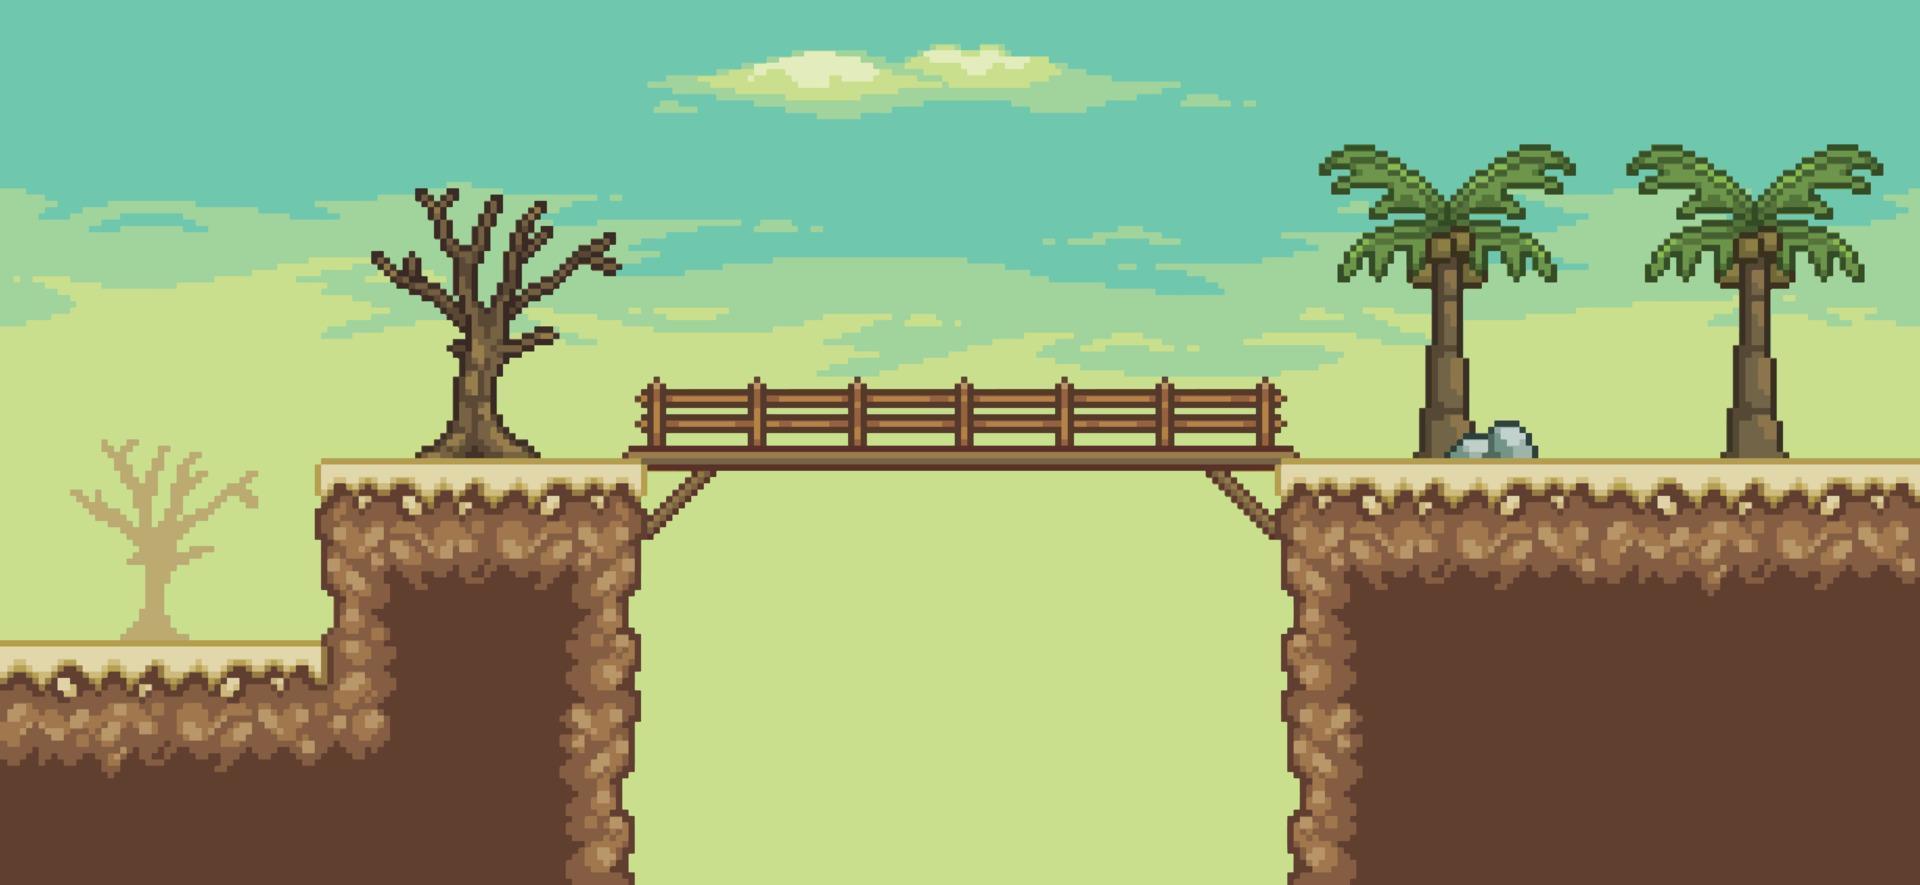 escena del juego del desierto de pixel art con palmera, cactus, puente, fondo de árbol de 8 bits vector